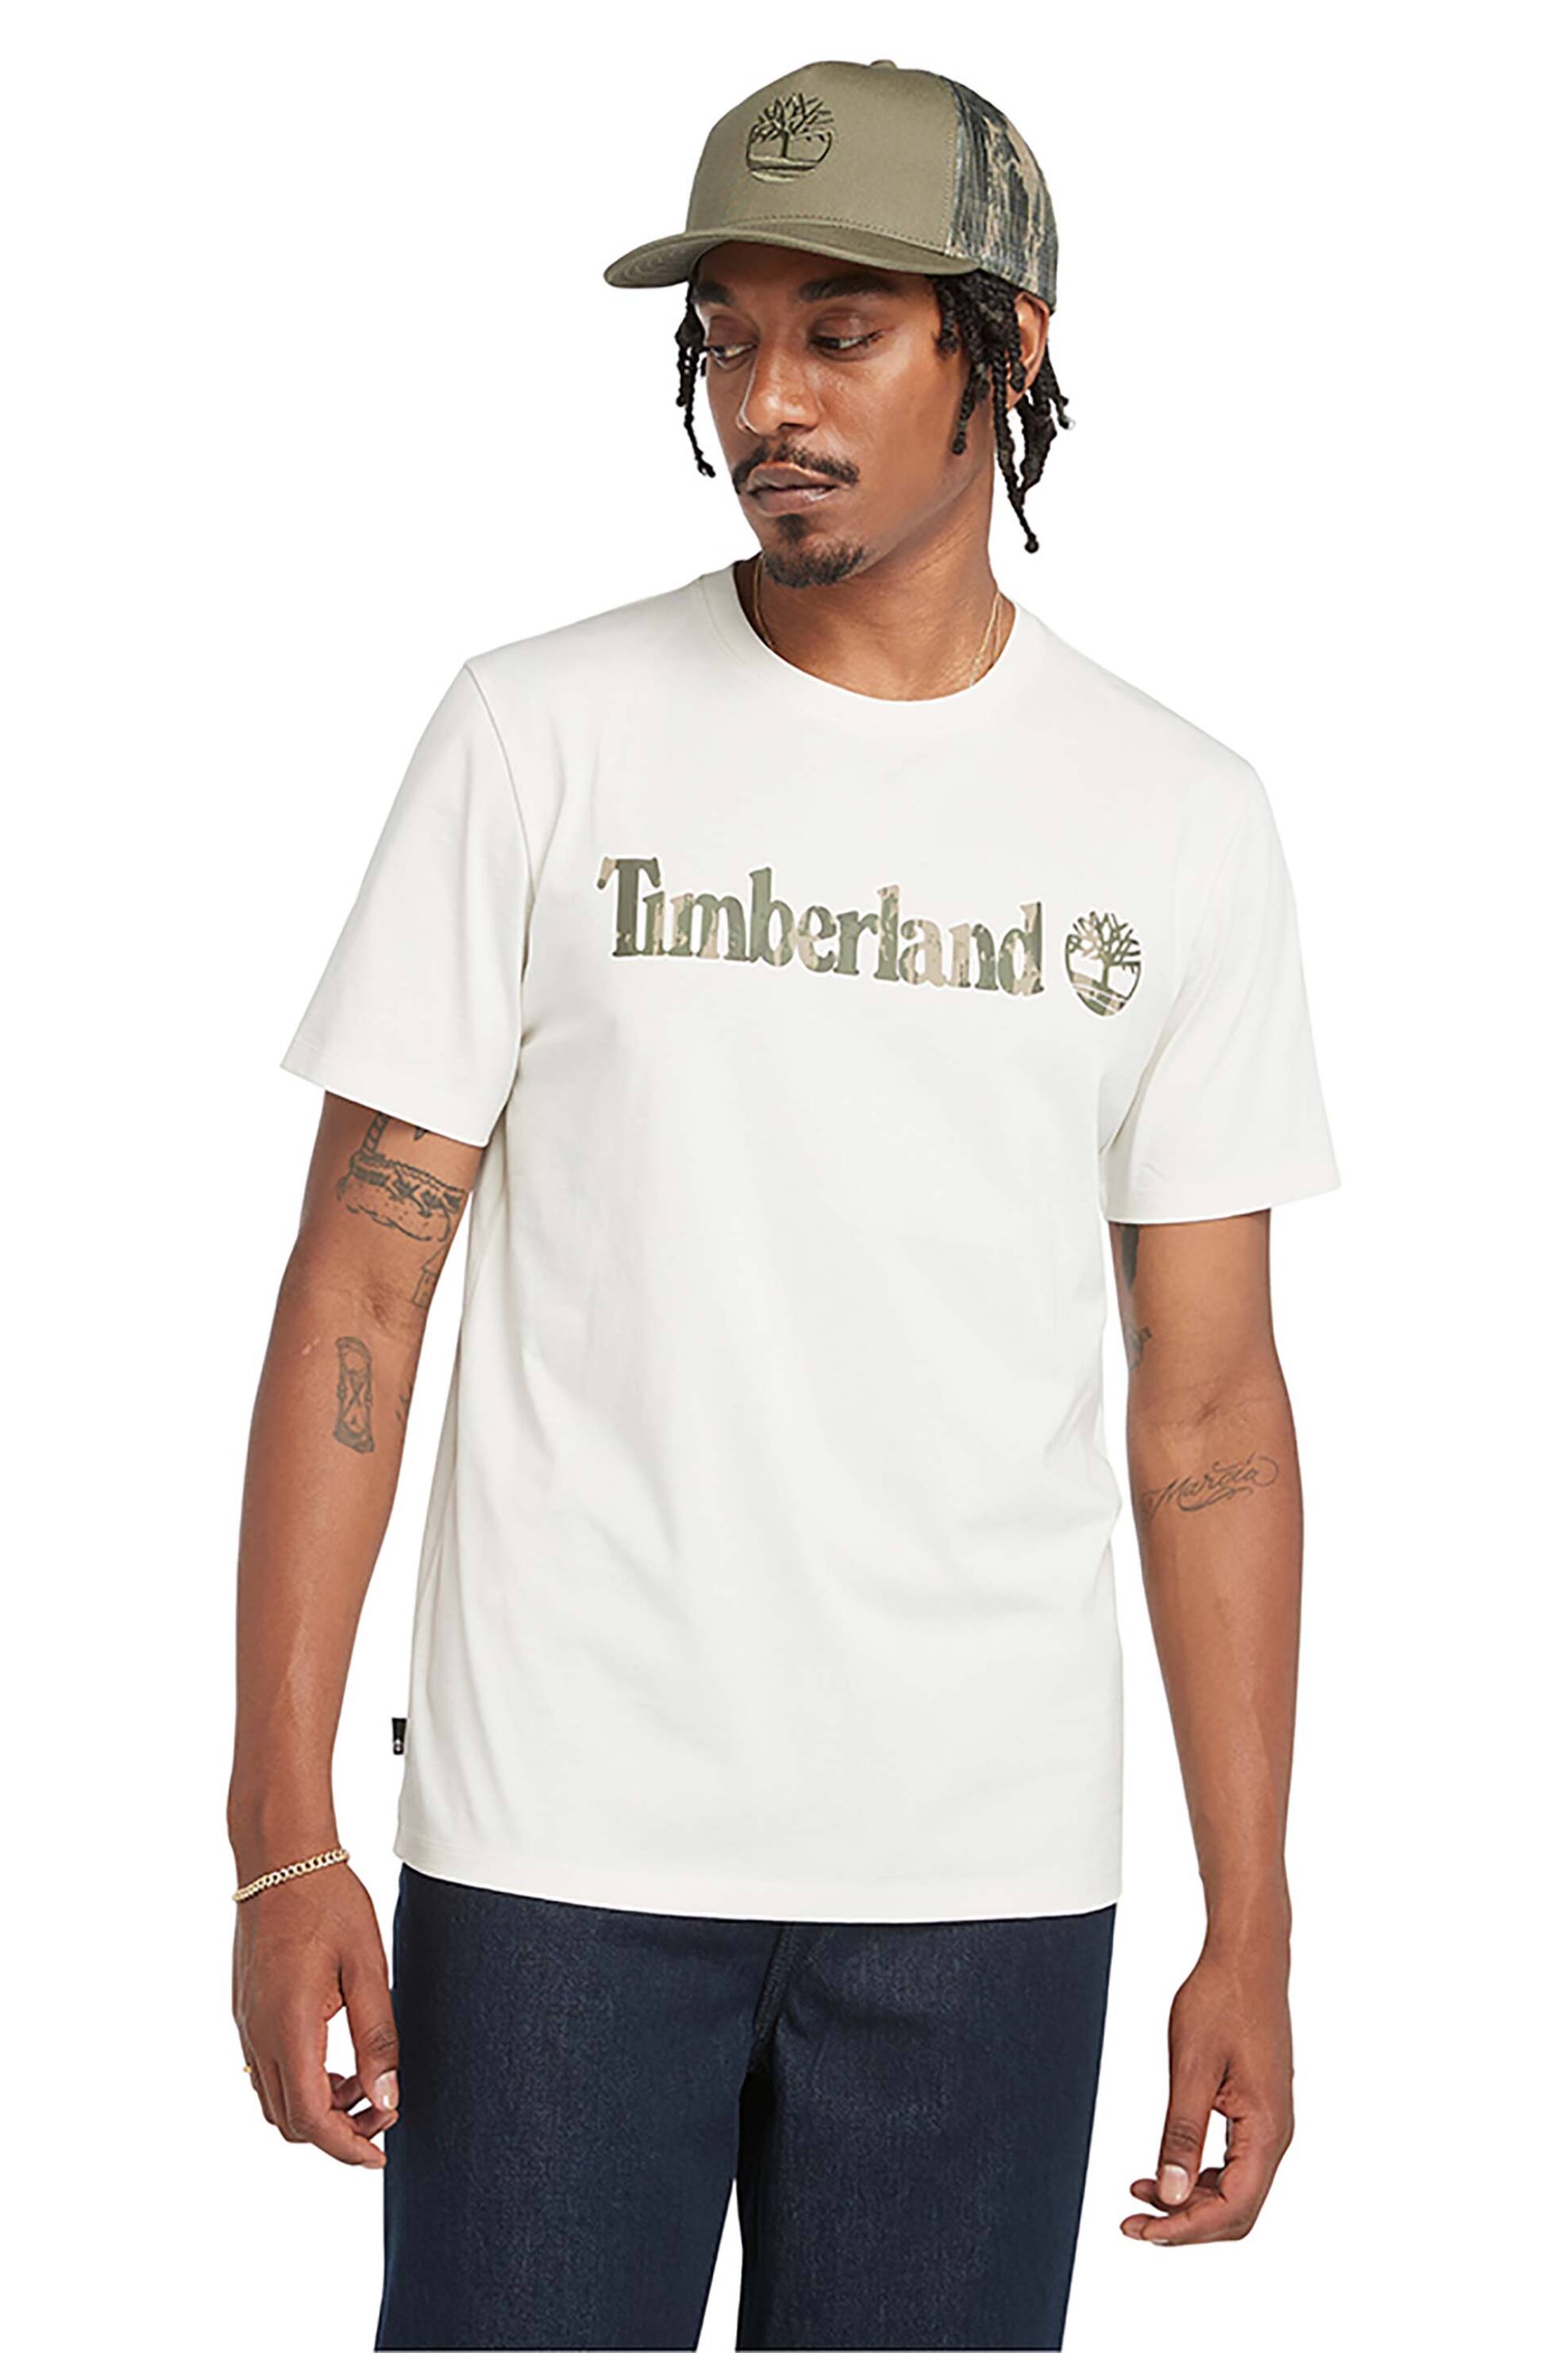 Ανδρική Μόδα > Ανδρικά Ρούχα > Ανδρικές Μπλούζες > Ανδρικά T-Shirts Timberland ανδρικό T-Shirt με letter logo print ''River Camo Linear'' - TB0A5UNFCM91 Εκρού